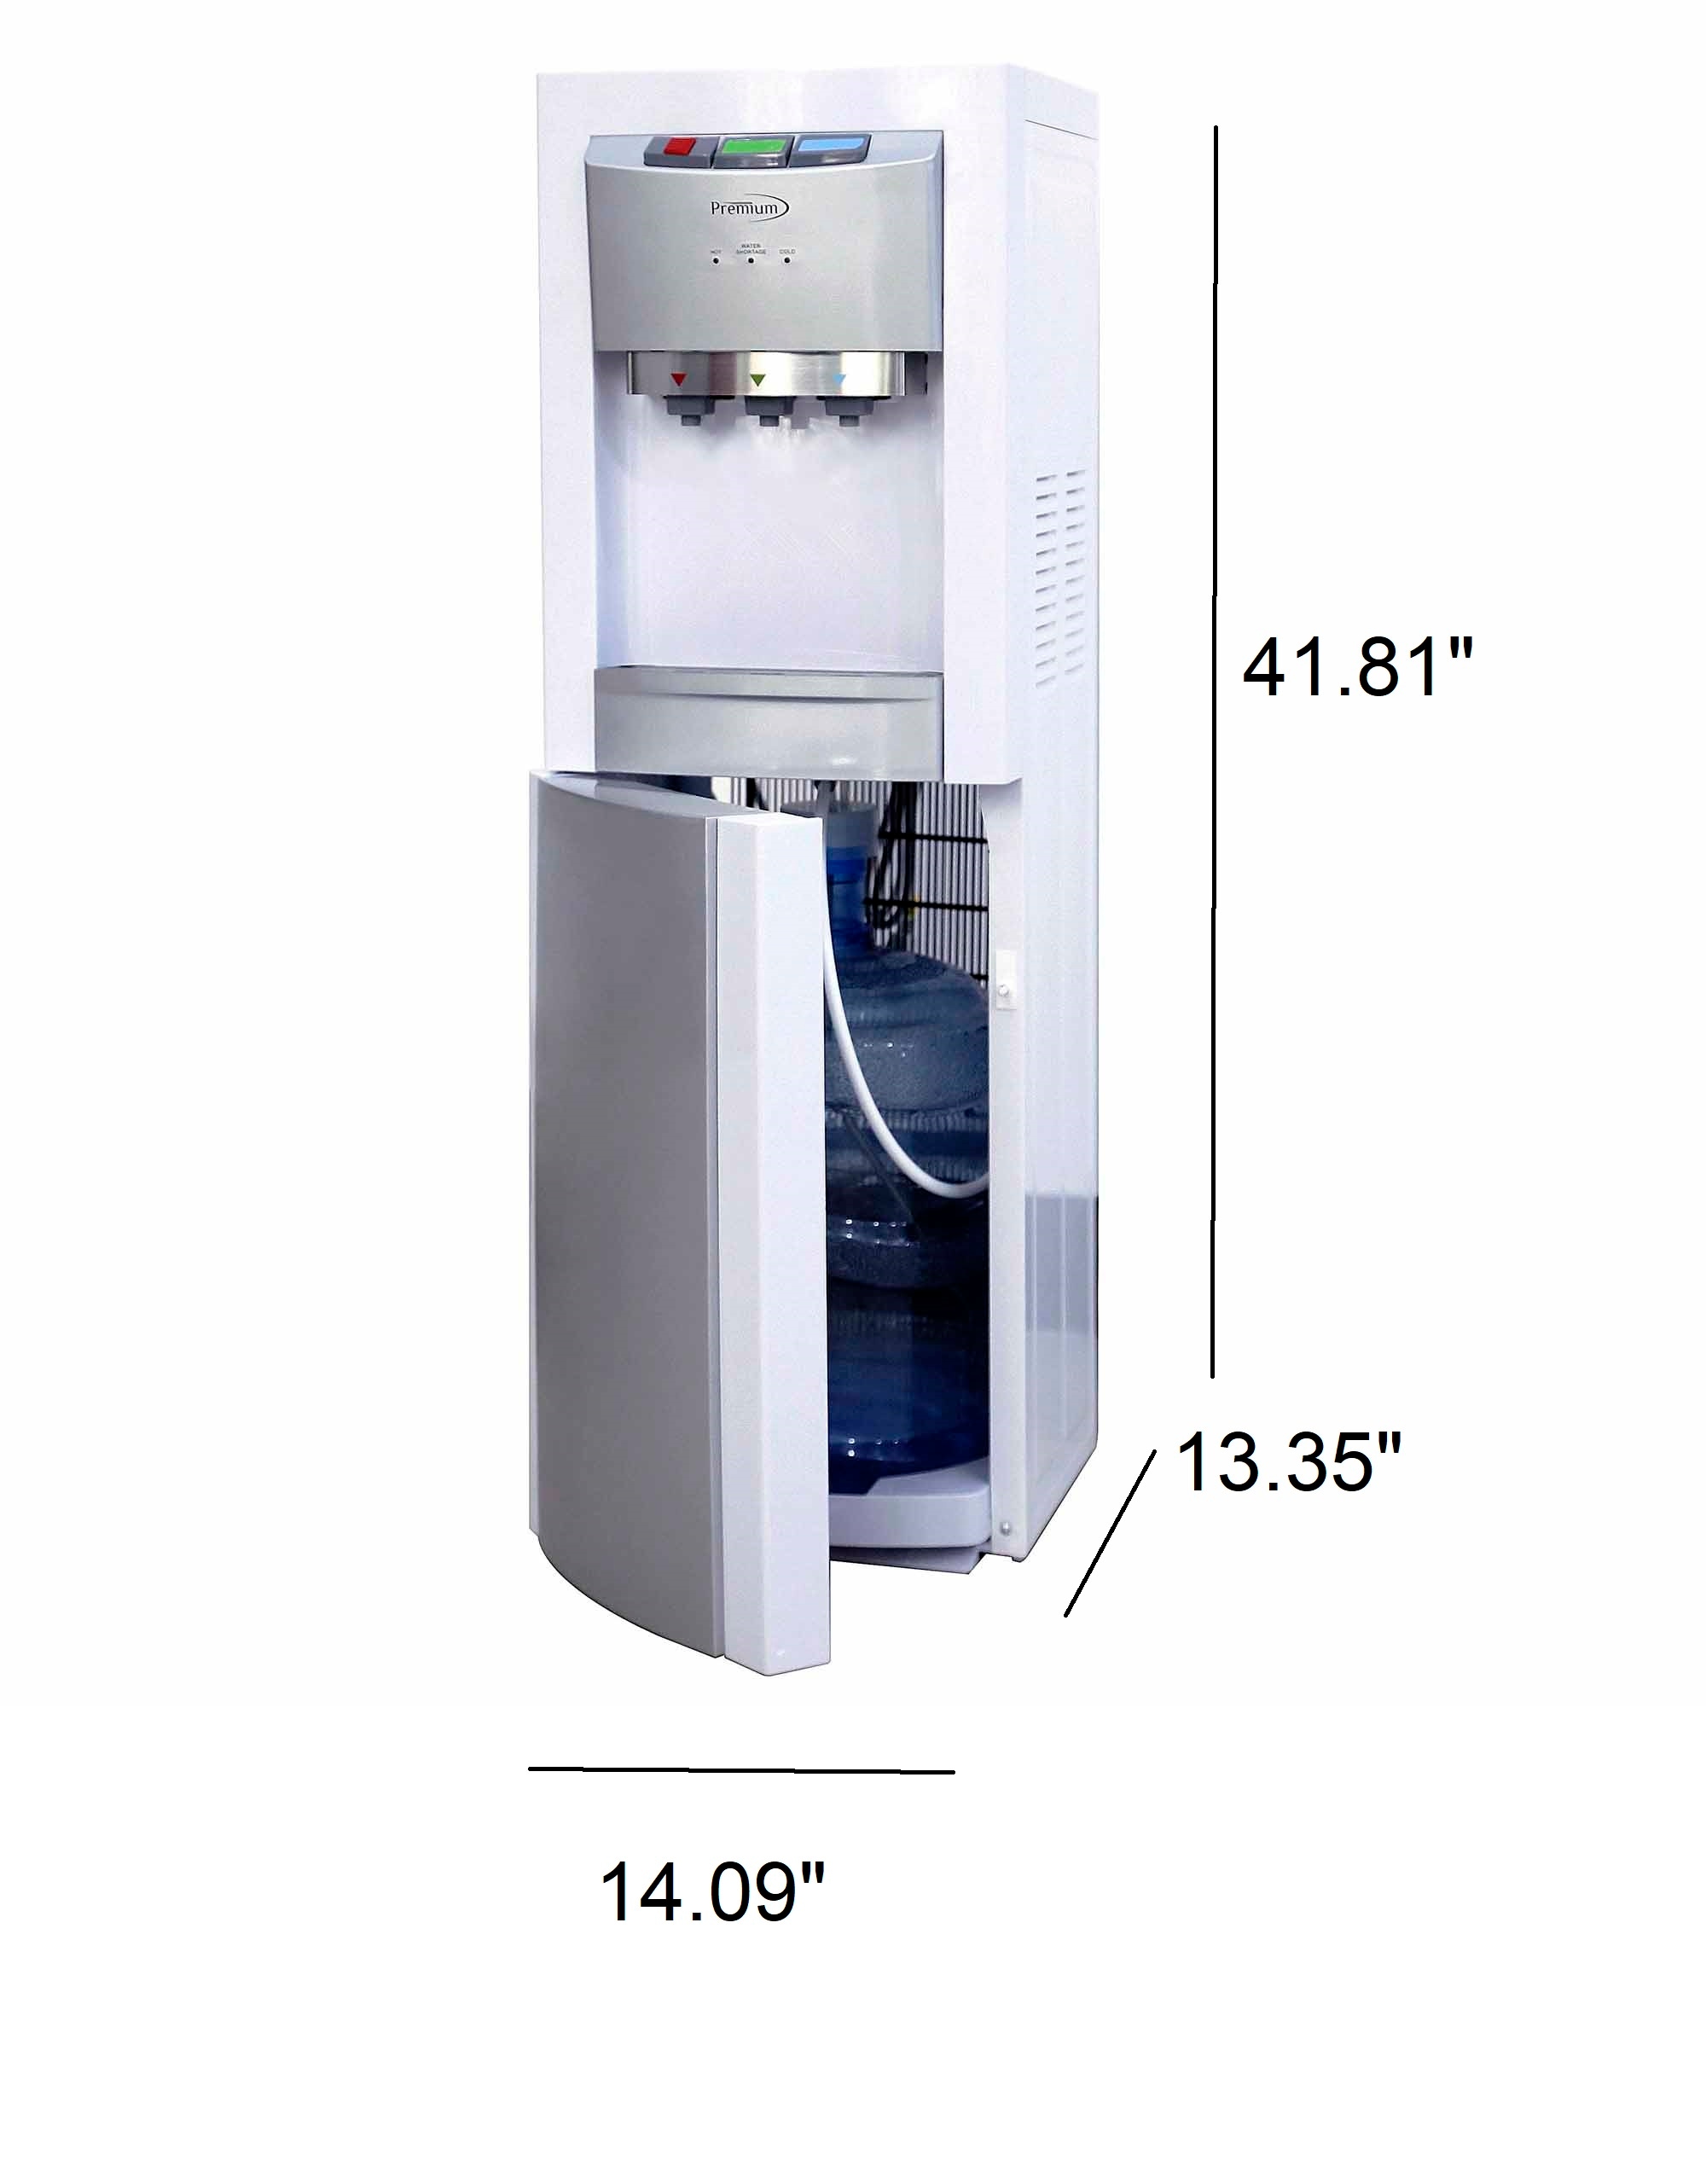  Spt 3.2-Liter Stainless Hot Water Dispenser : Home